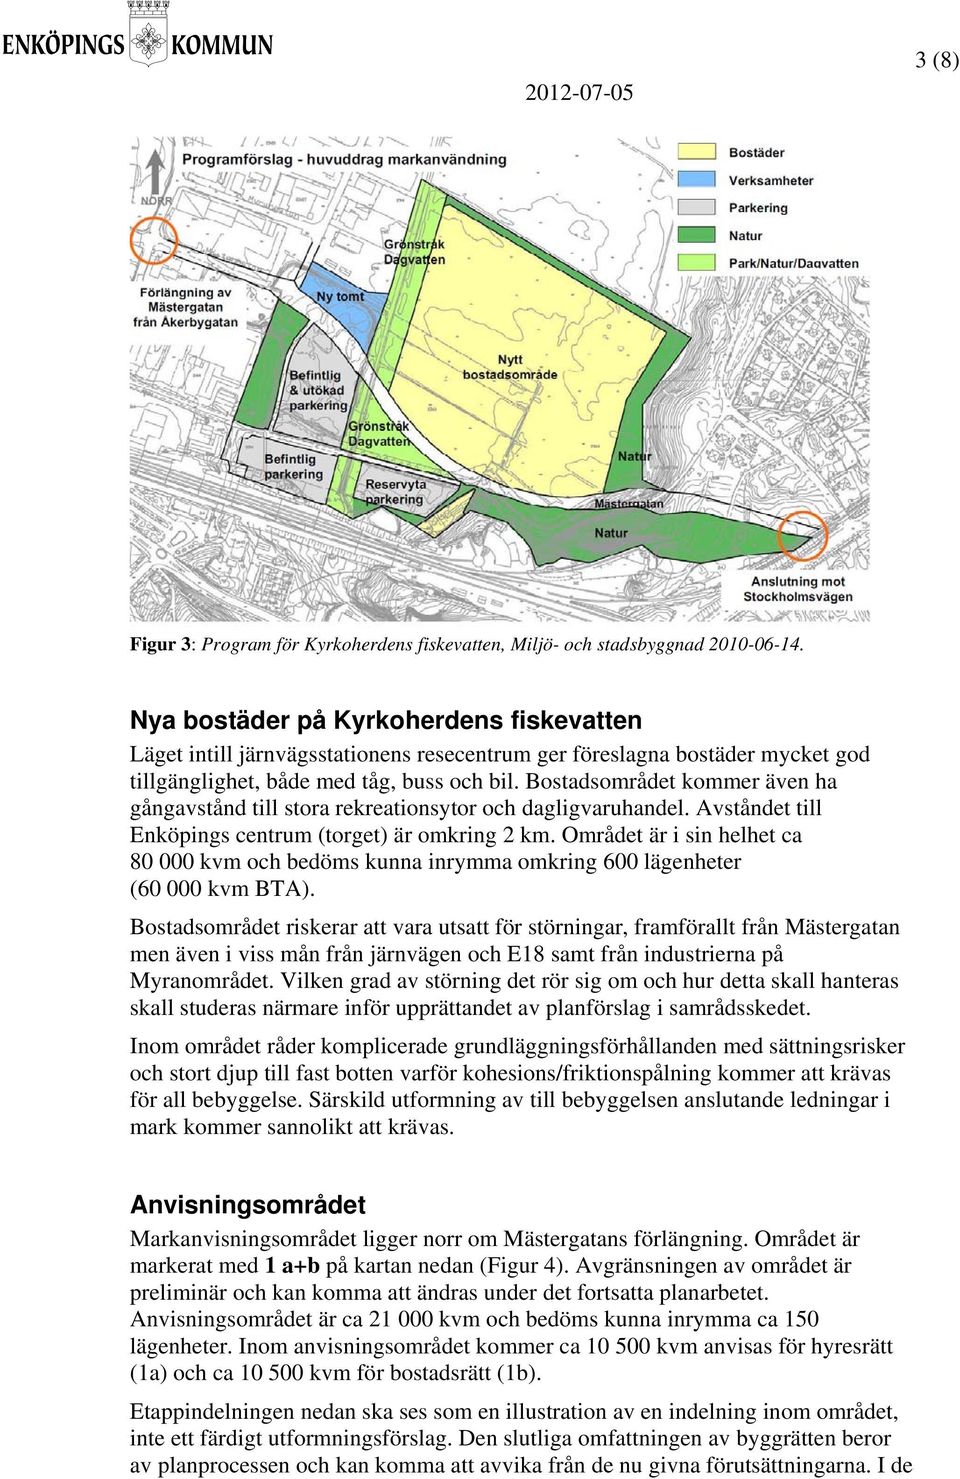 Bostadsområdet kommer även ha gångavstånd till stora rekreationsytor och dagligvaruhandel. Avståndet till Enköpings centrum (torget) är omkring 2 km.